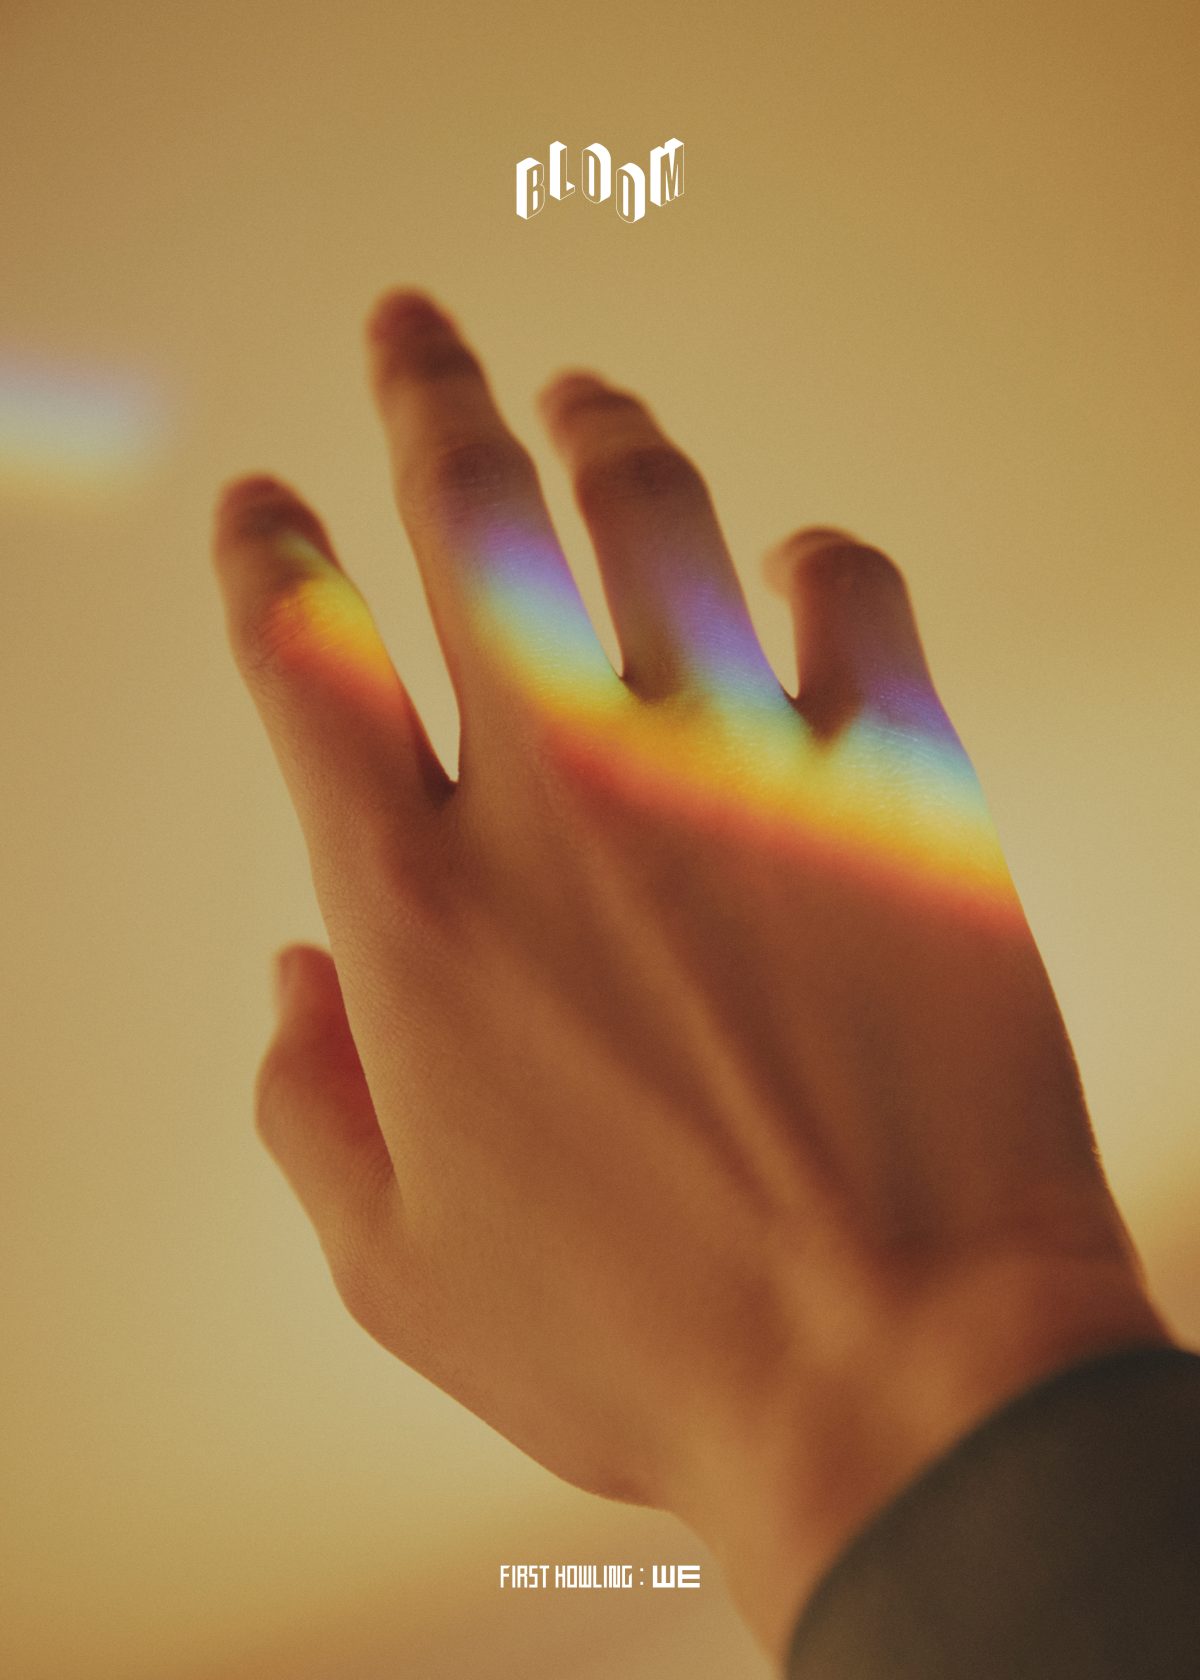 魔法のような虹色の光を掠める手©HYBE LABELS JAPAN